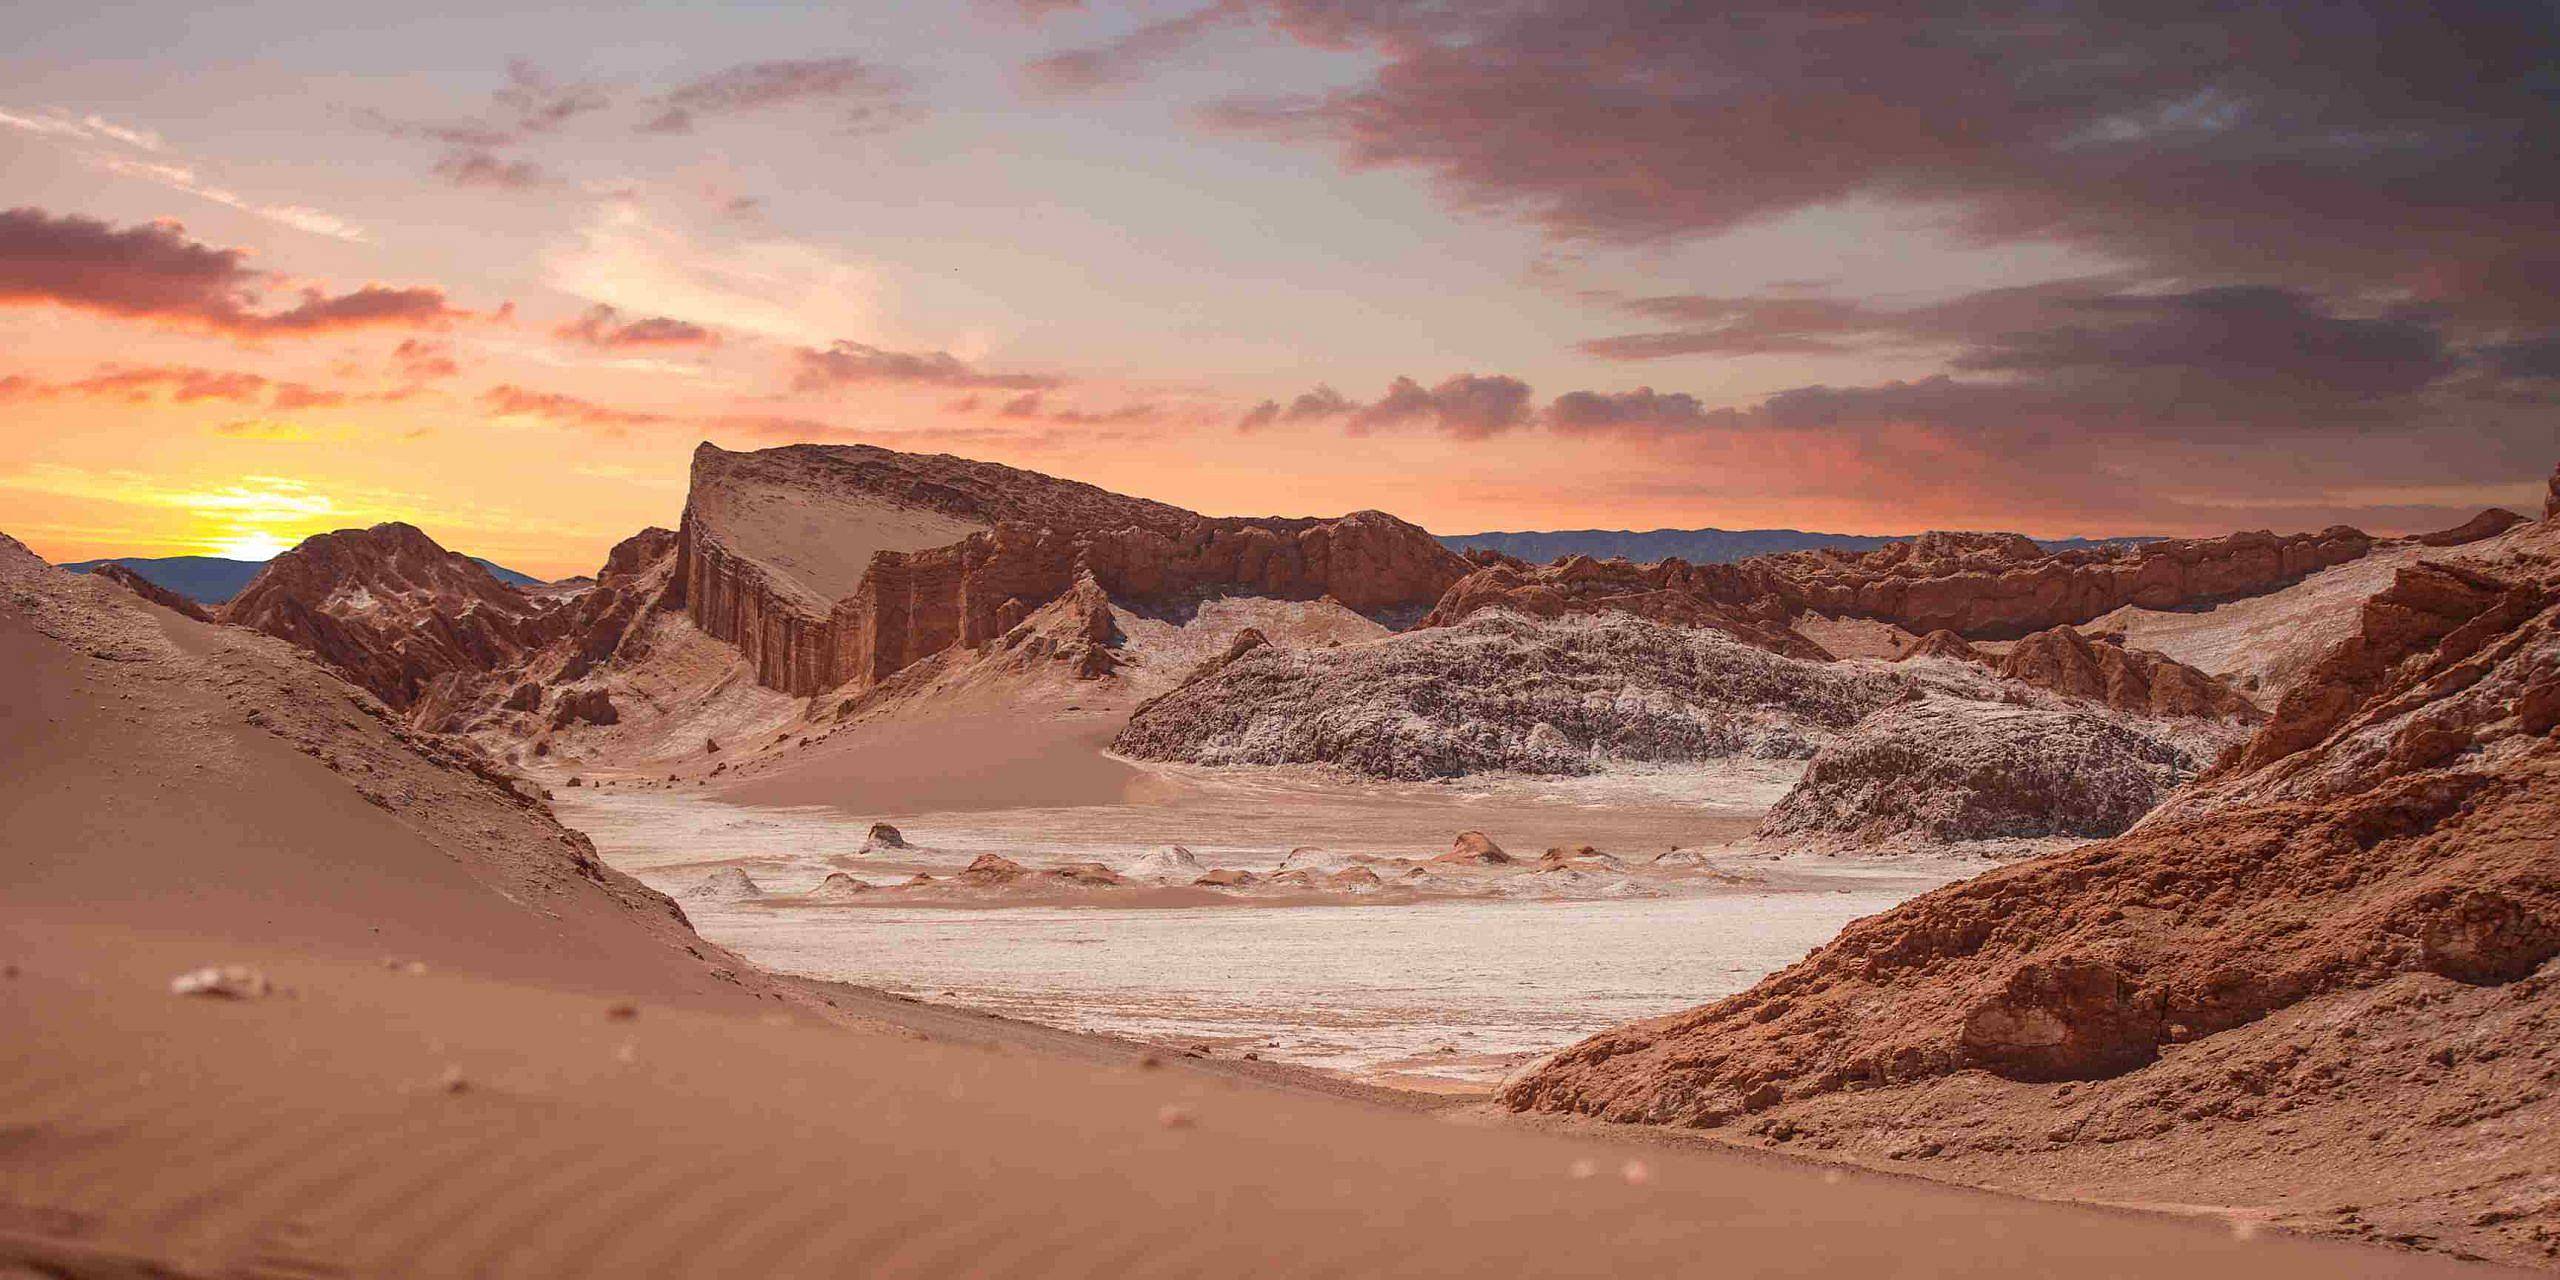 Visita al desierto más árido del mundo